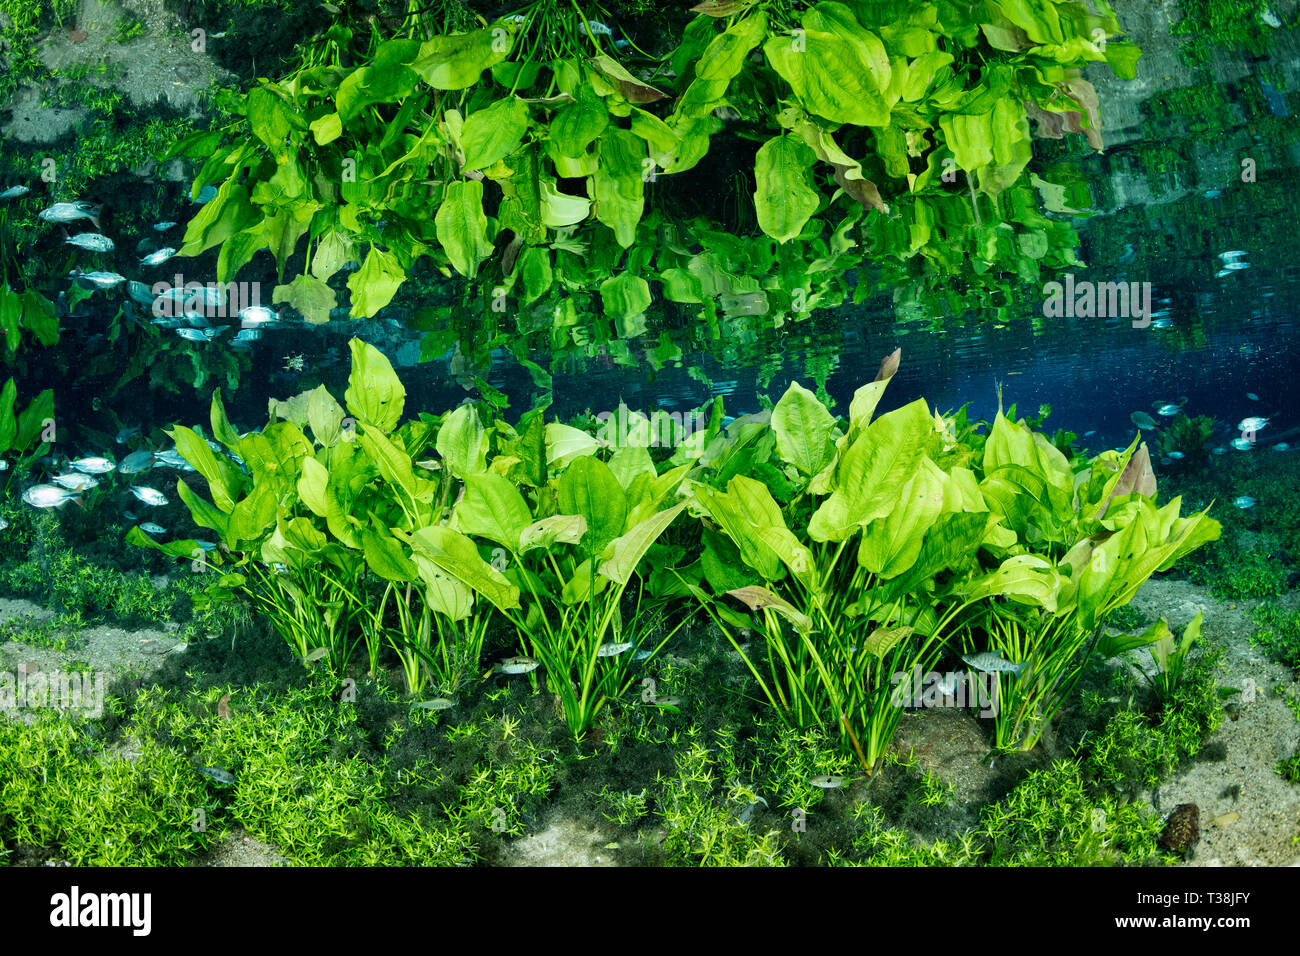 Underwater plants in Nascente Azul, Nascente Azul, Mato Grosso do Sul, Brazil Stock Photo